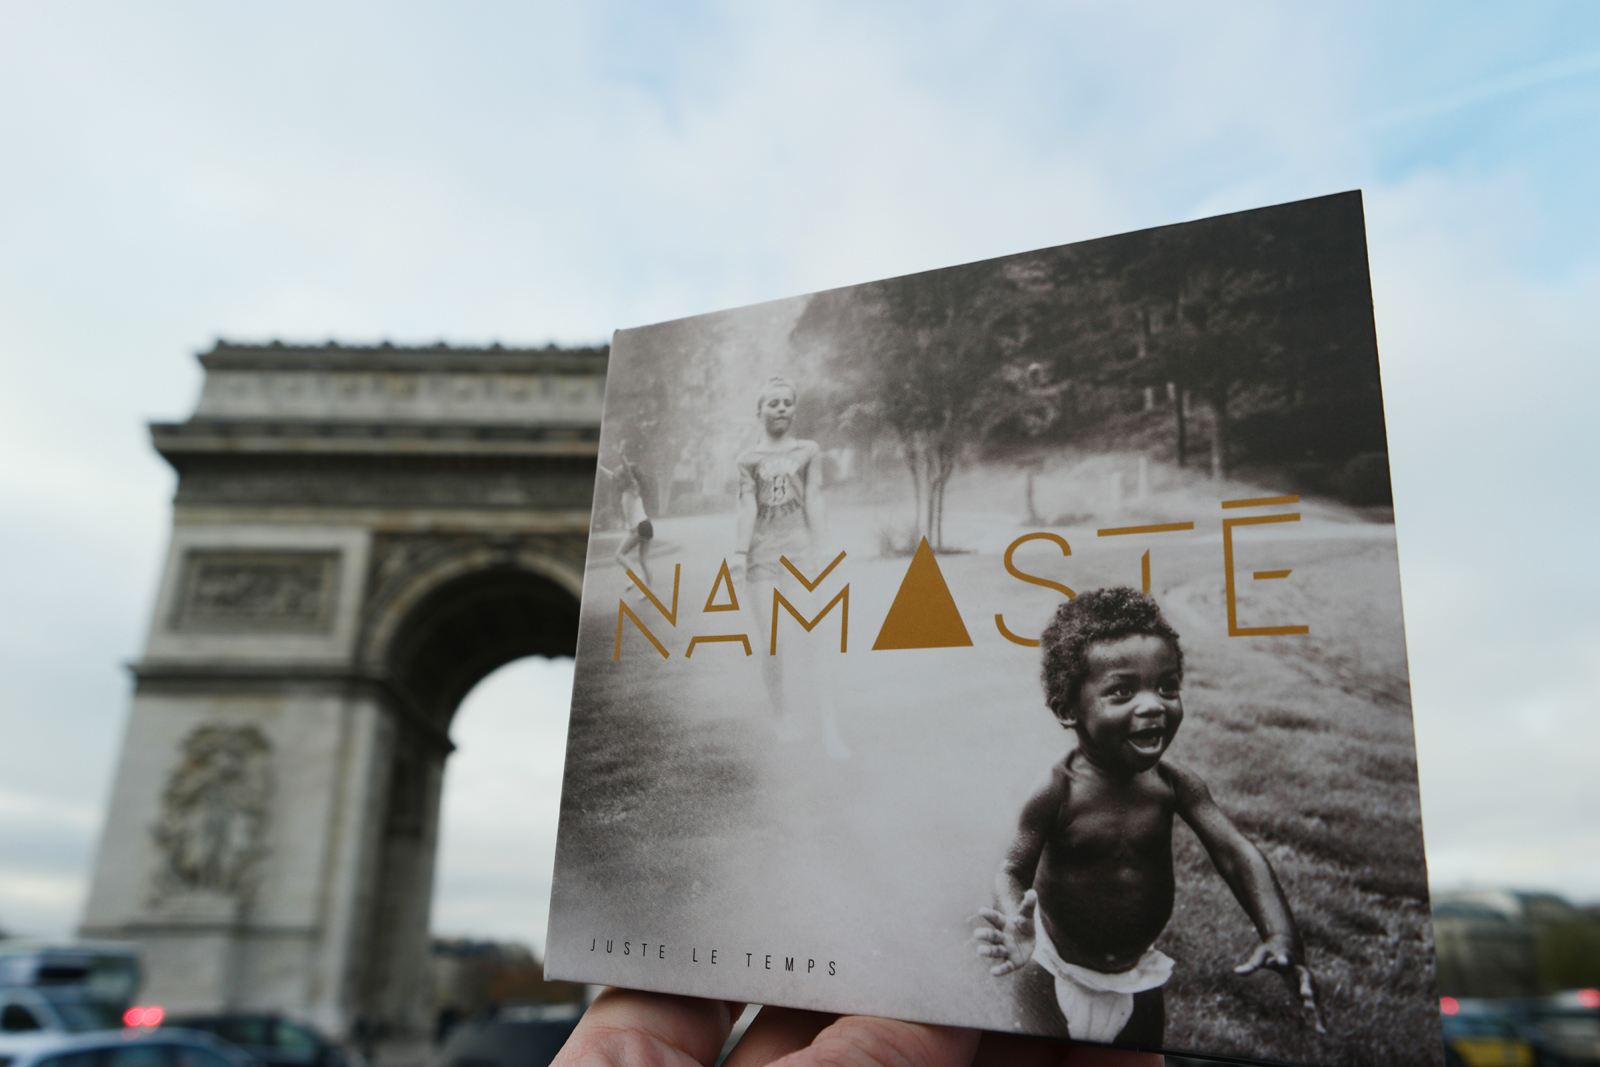 Pochette album Juste le temps du groupe Namasté wearenamaste musique photo united states of paris blog usofparis